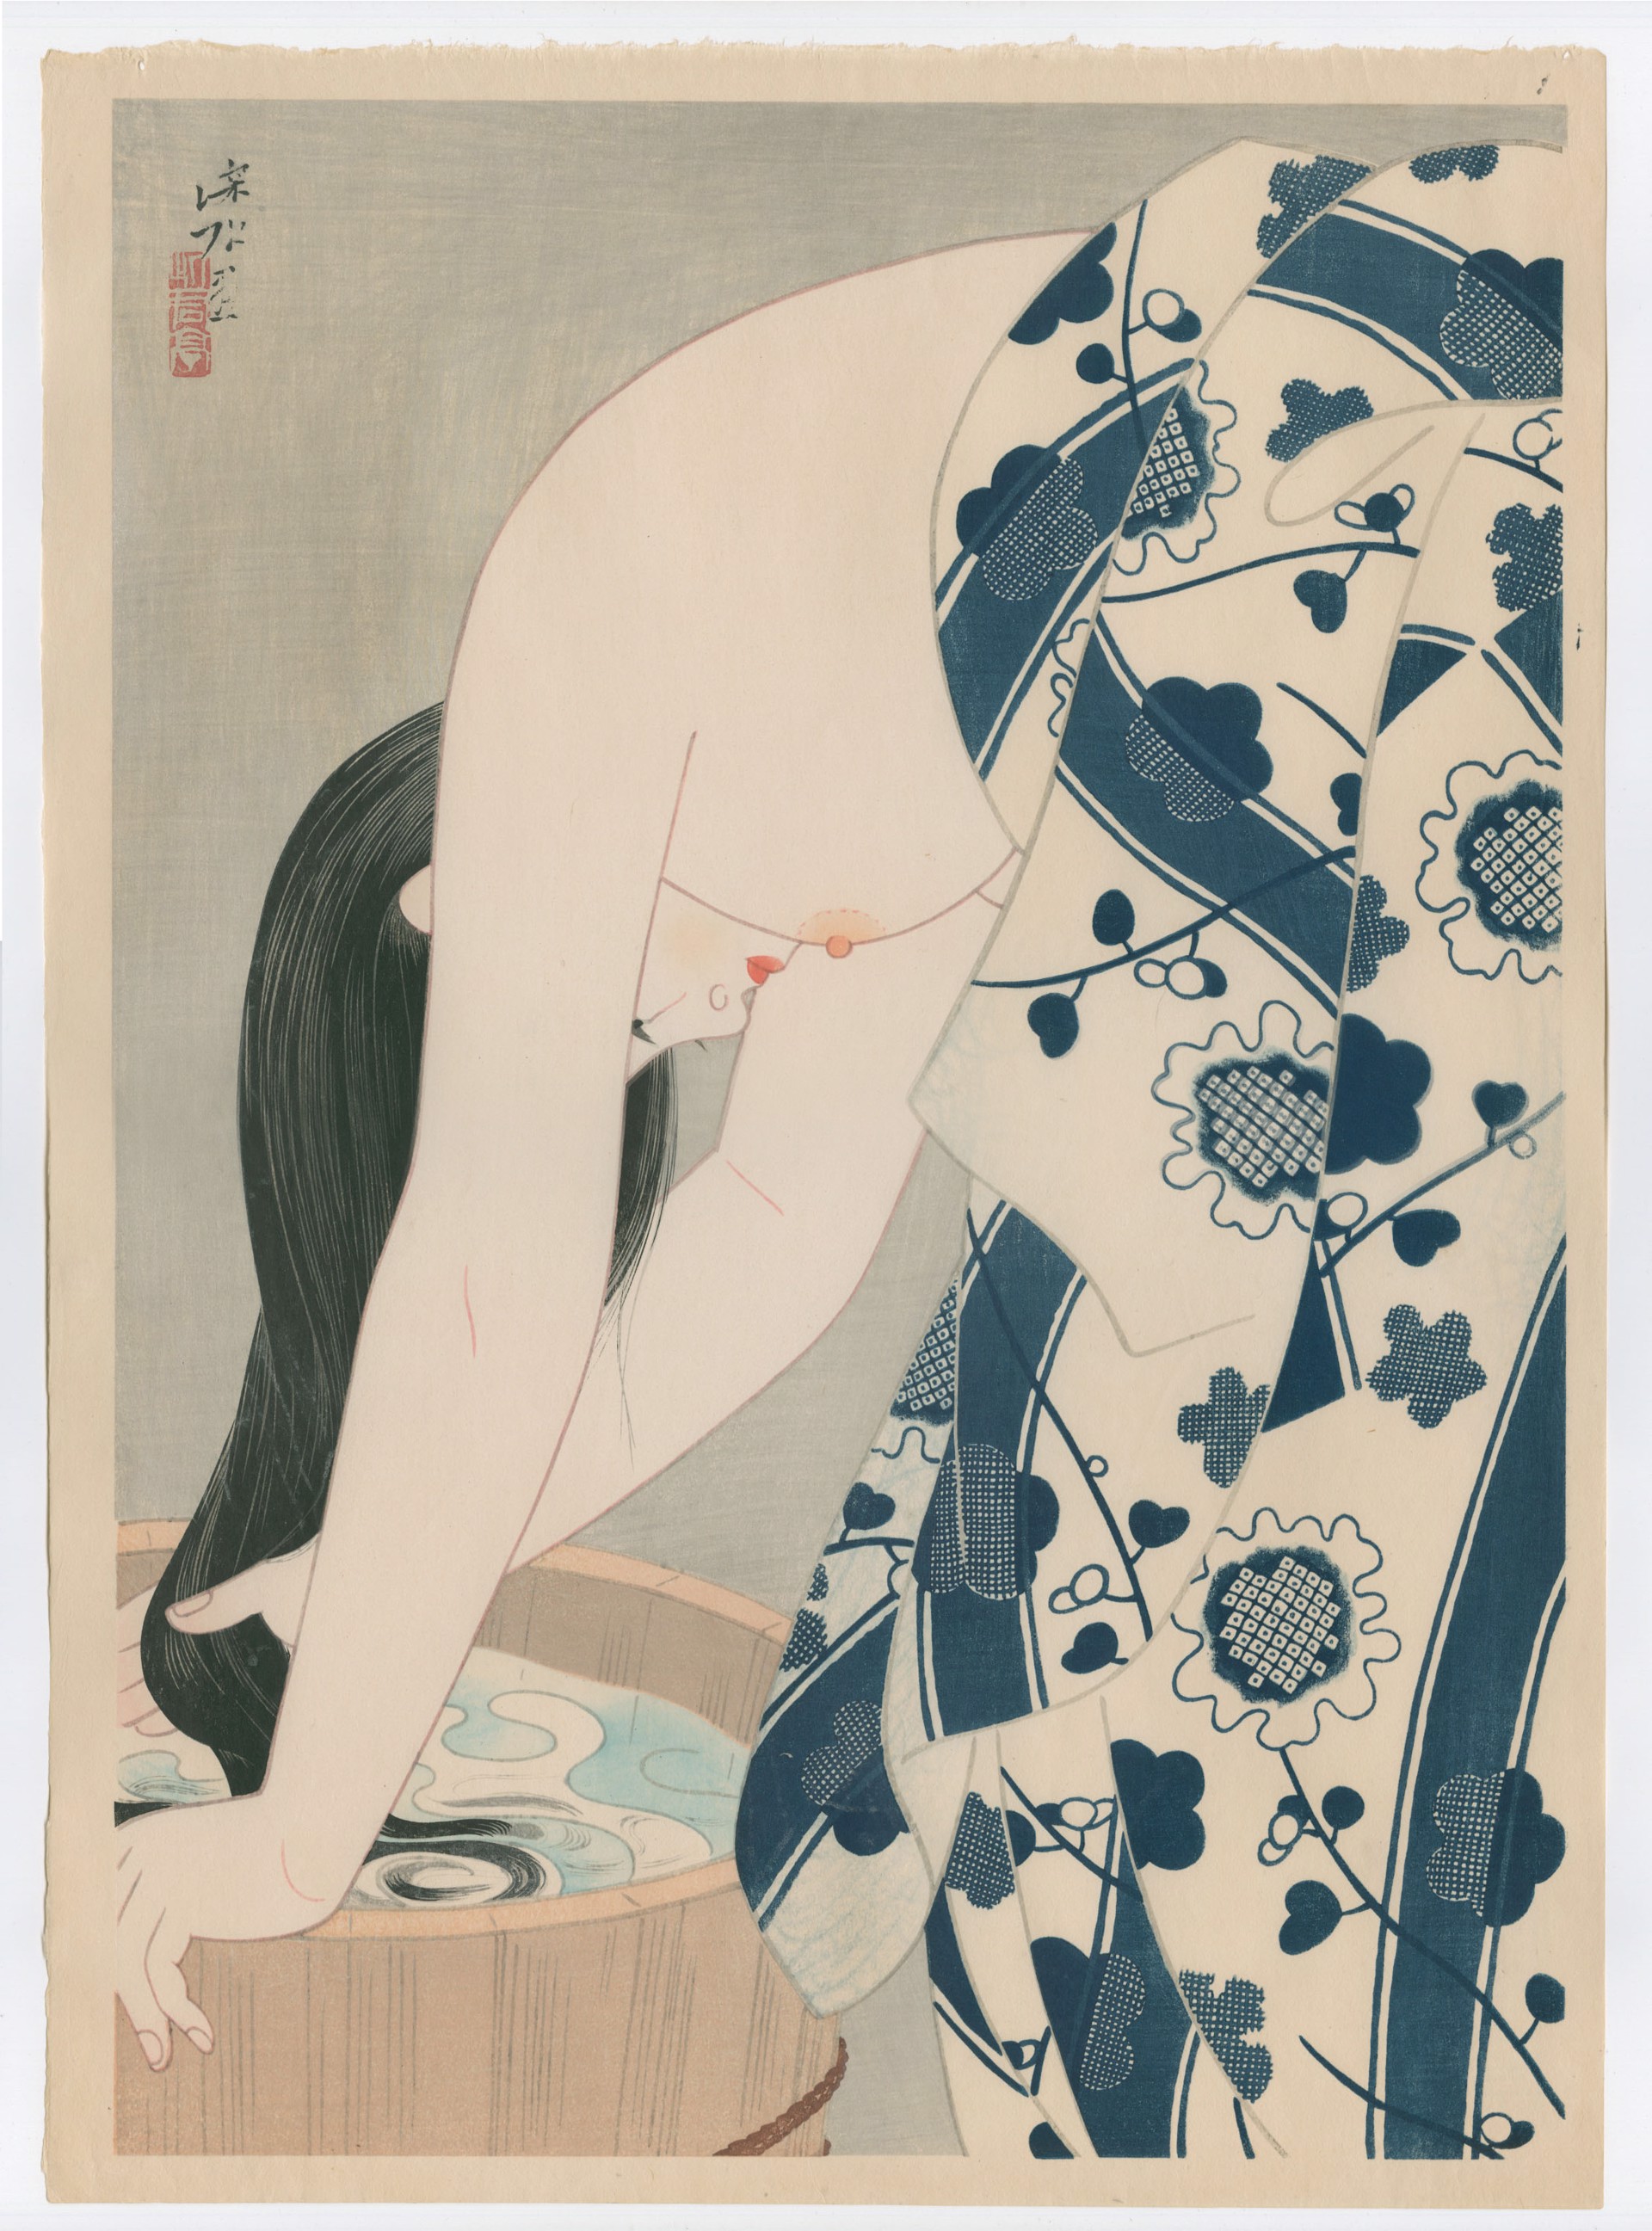 Kami (Washing Her Hair)  #159 by Shinsui